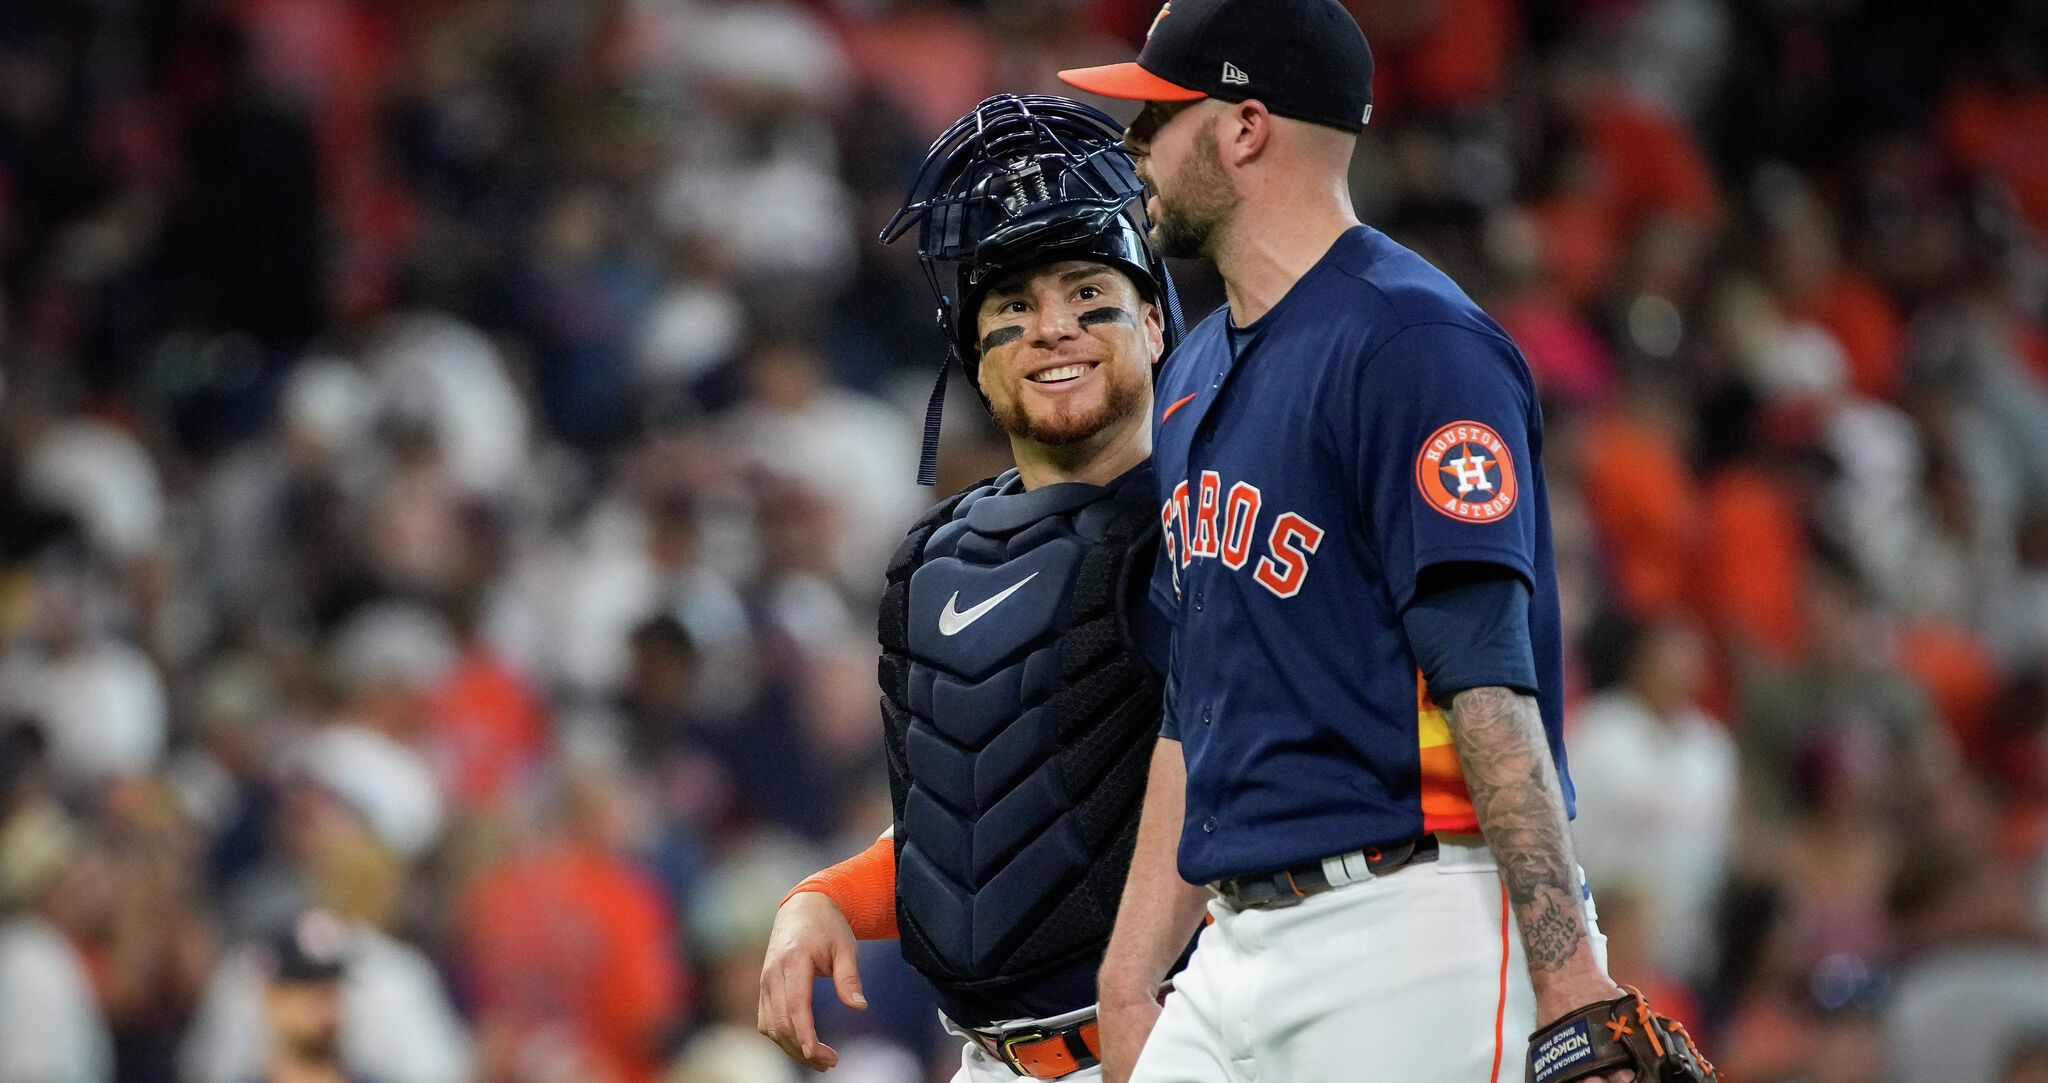 World Series: Catcher Christian Vazquez Helps Guide Astros to No